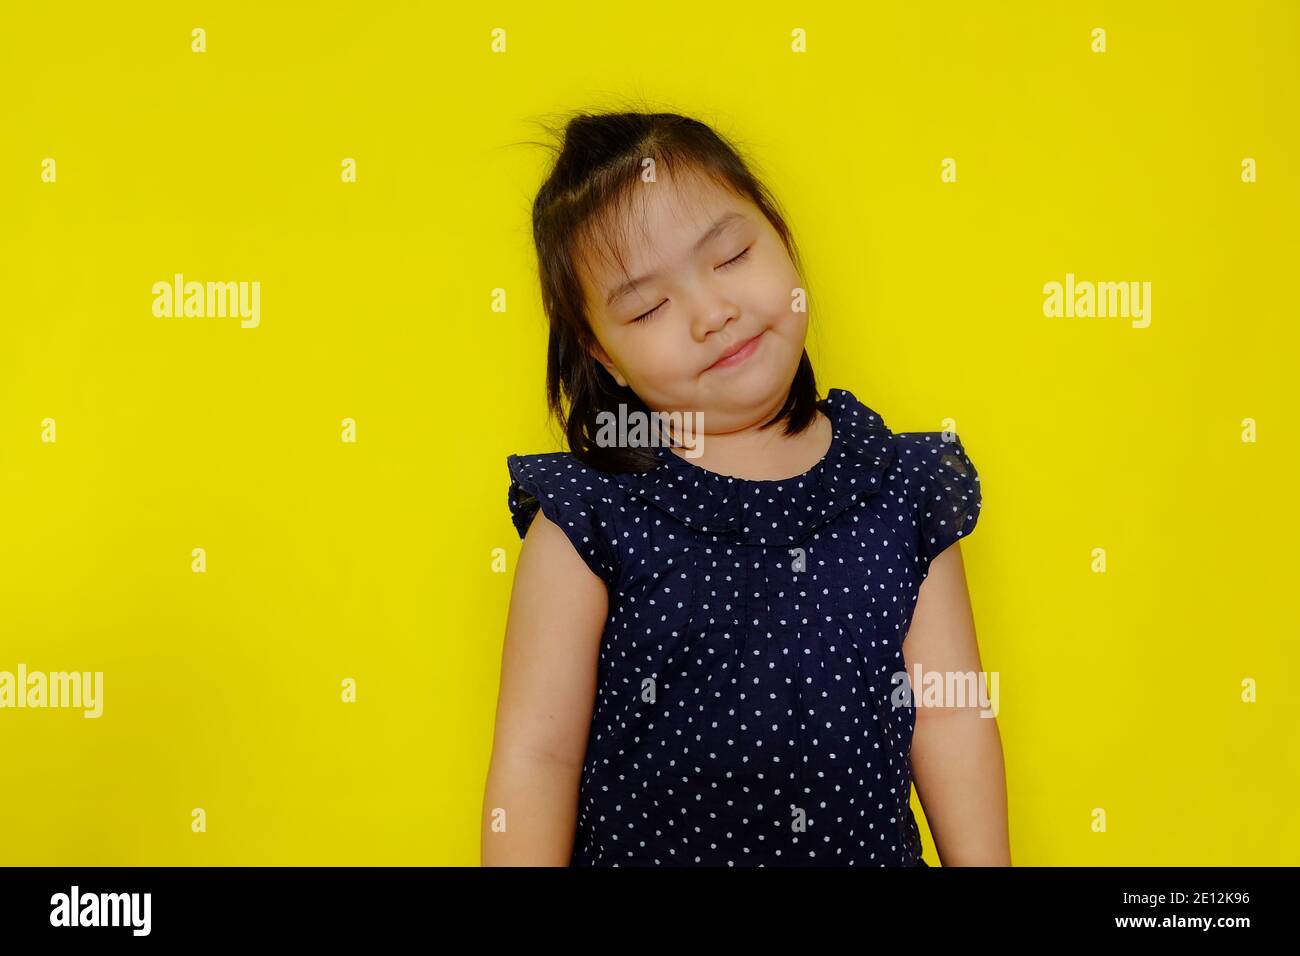 Ein nettes junges asiatisches Mädchen Tag träumen, lächeln mit ihren Augen nah und glücklich Gedanken. Hellgelber Hintergrund. Stockfoto